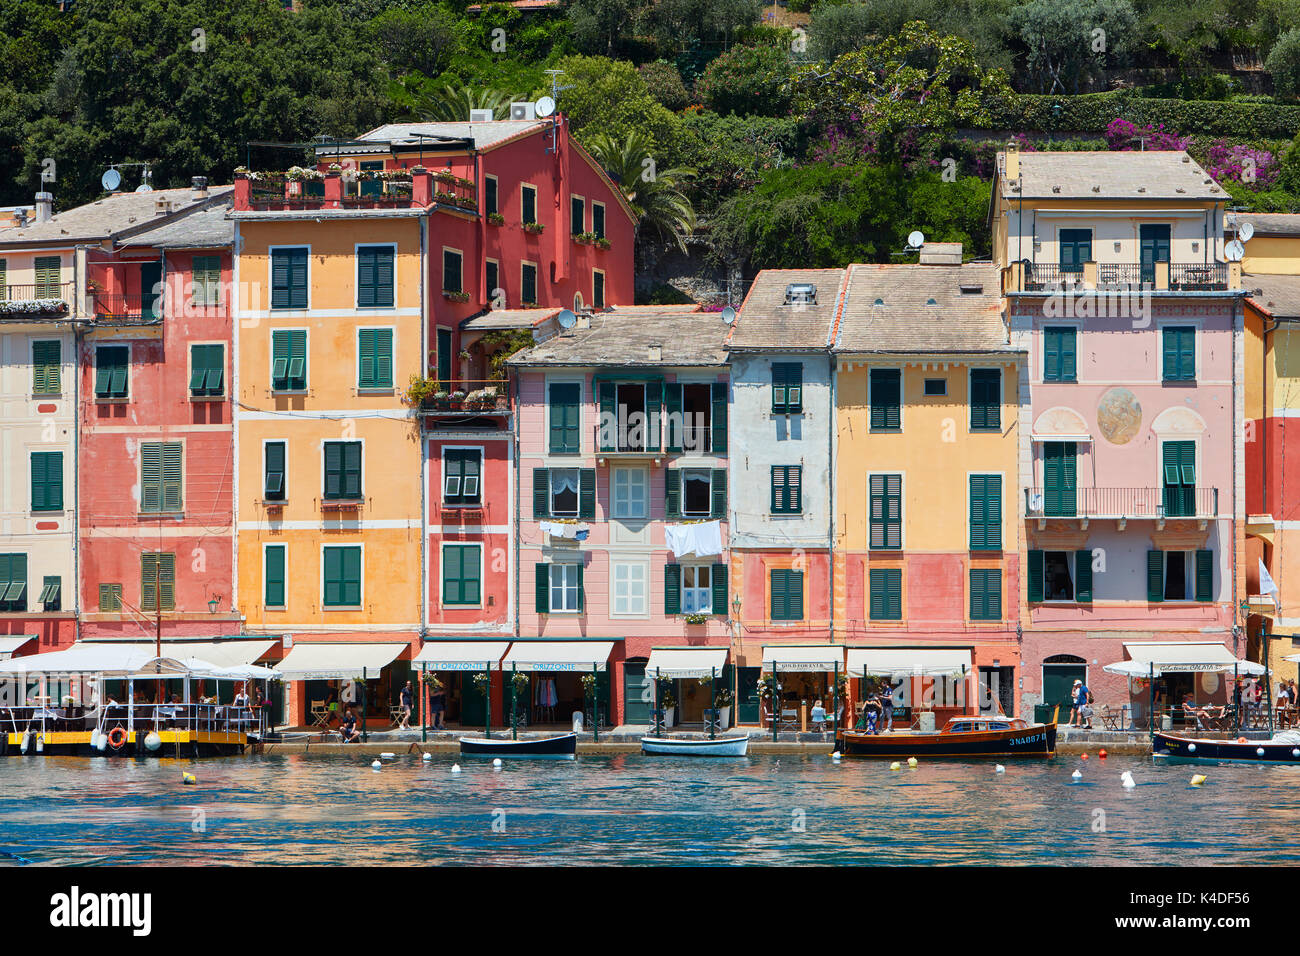 Portofino tipico bellissimo villaggio con case colorate facciate e negozi di lusso a Portofino, Italia Foto Stock